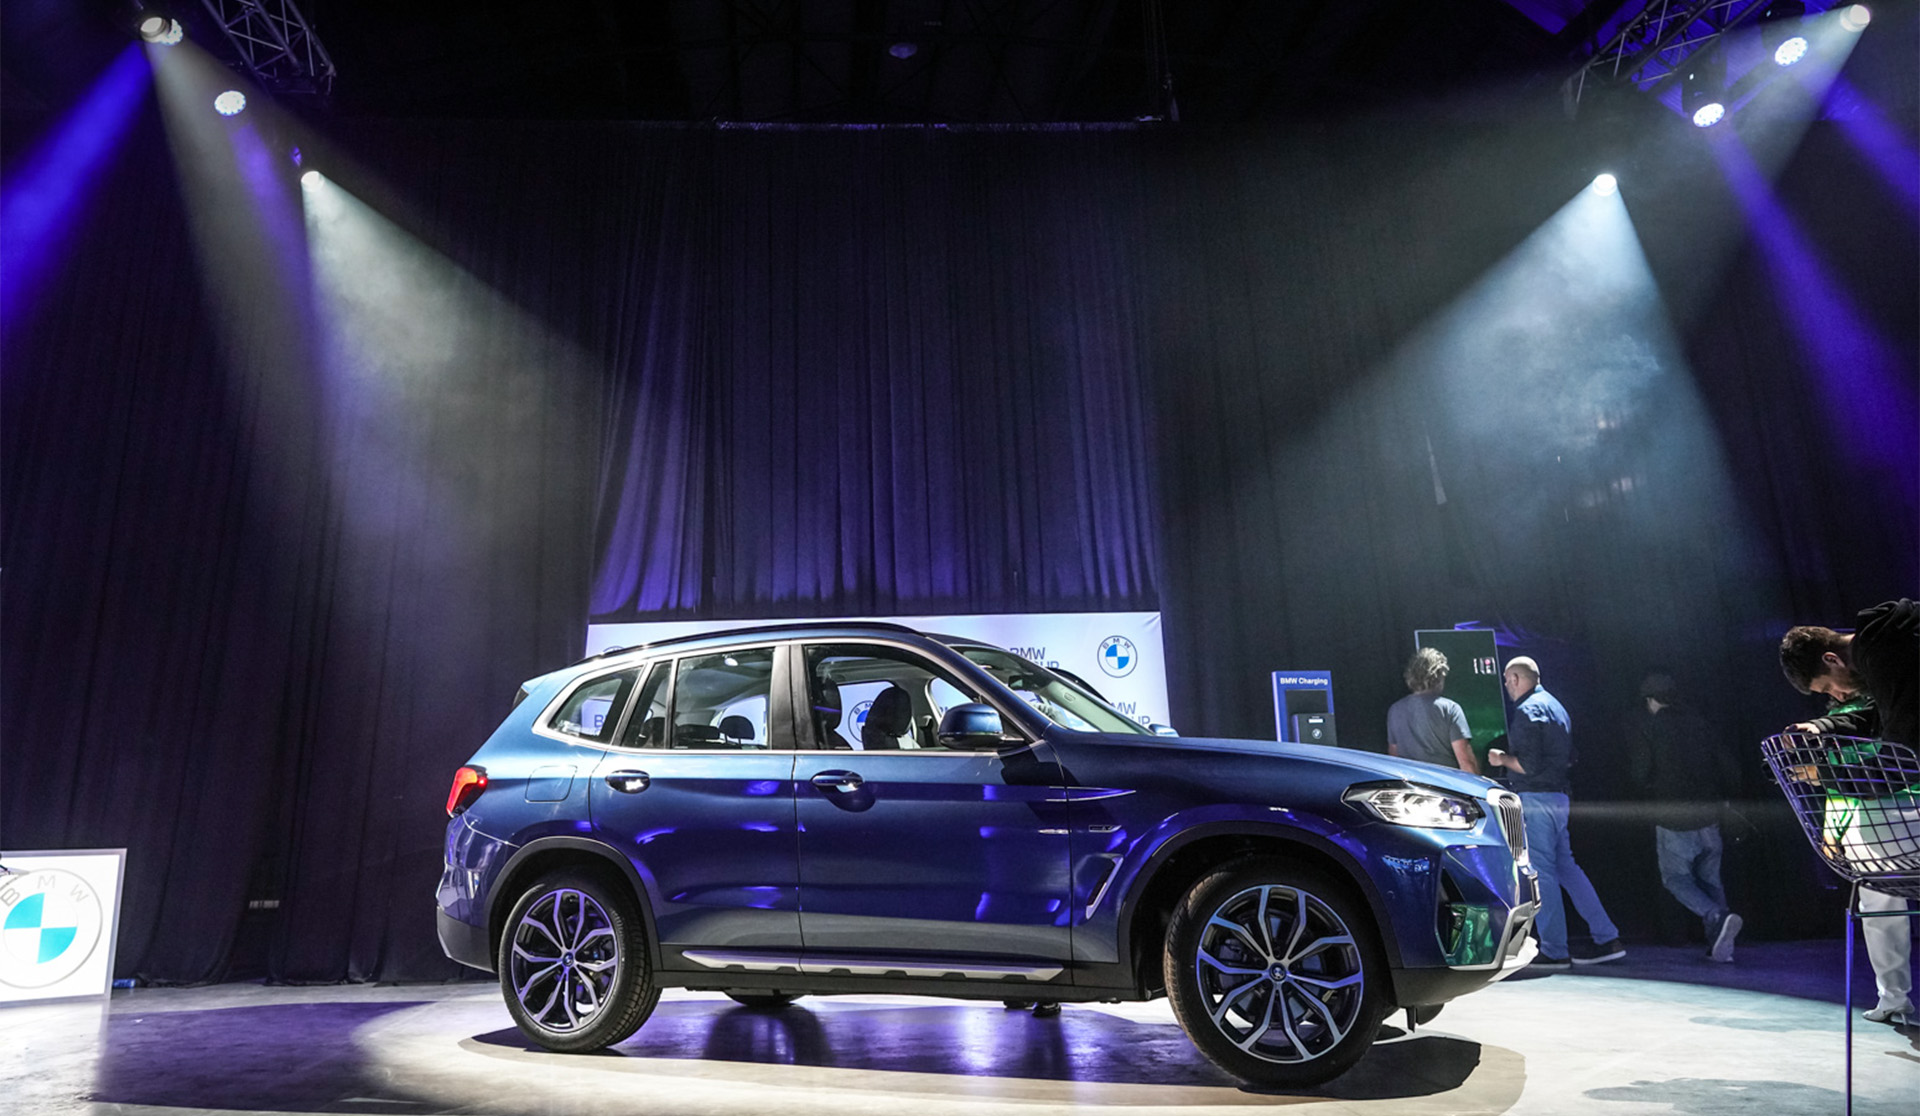 El BMW X3 xDrive30e es híbrido enchufable, ofreciendo autonomía 100% eléctrica para recorridos urbanos e híbrida para un viaje eficiente en distancias más prolongadas